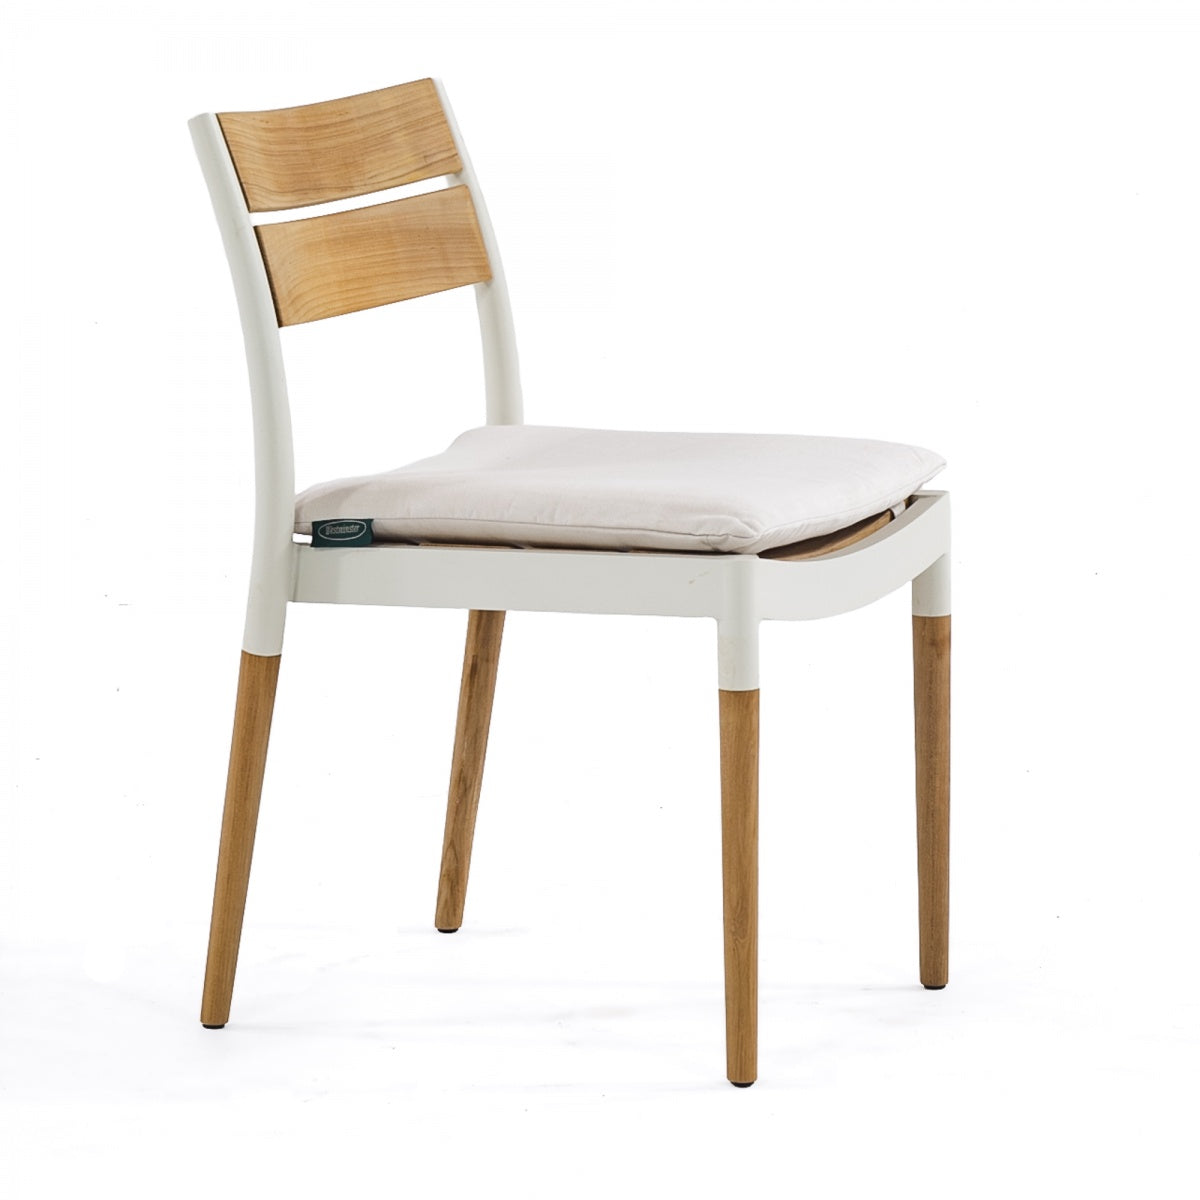 Westminster Teak - Bloom Side Chair Powder Coated Aluminum & Teak - 21916